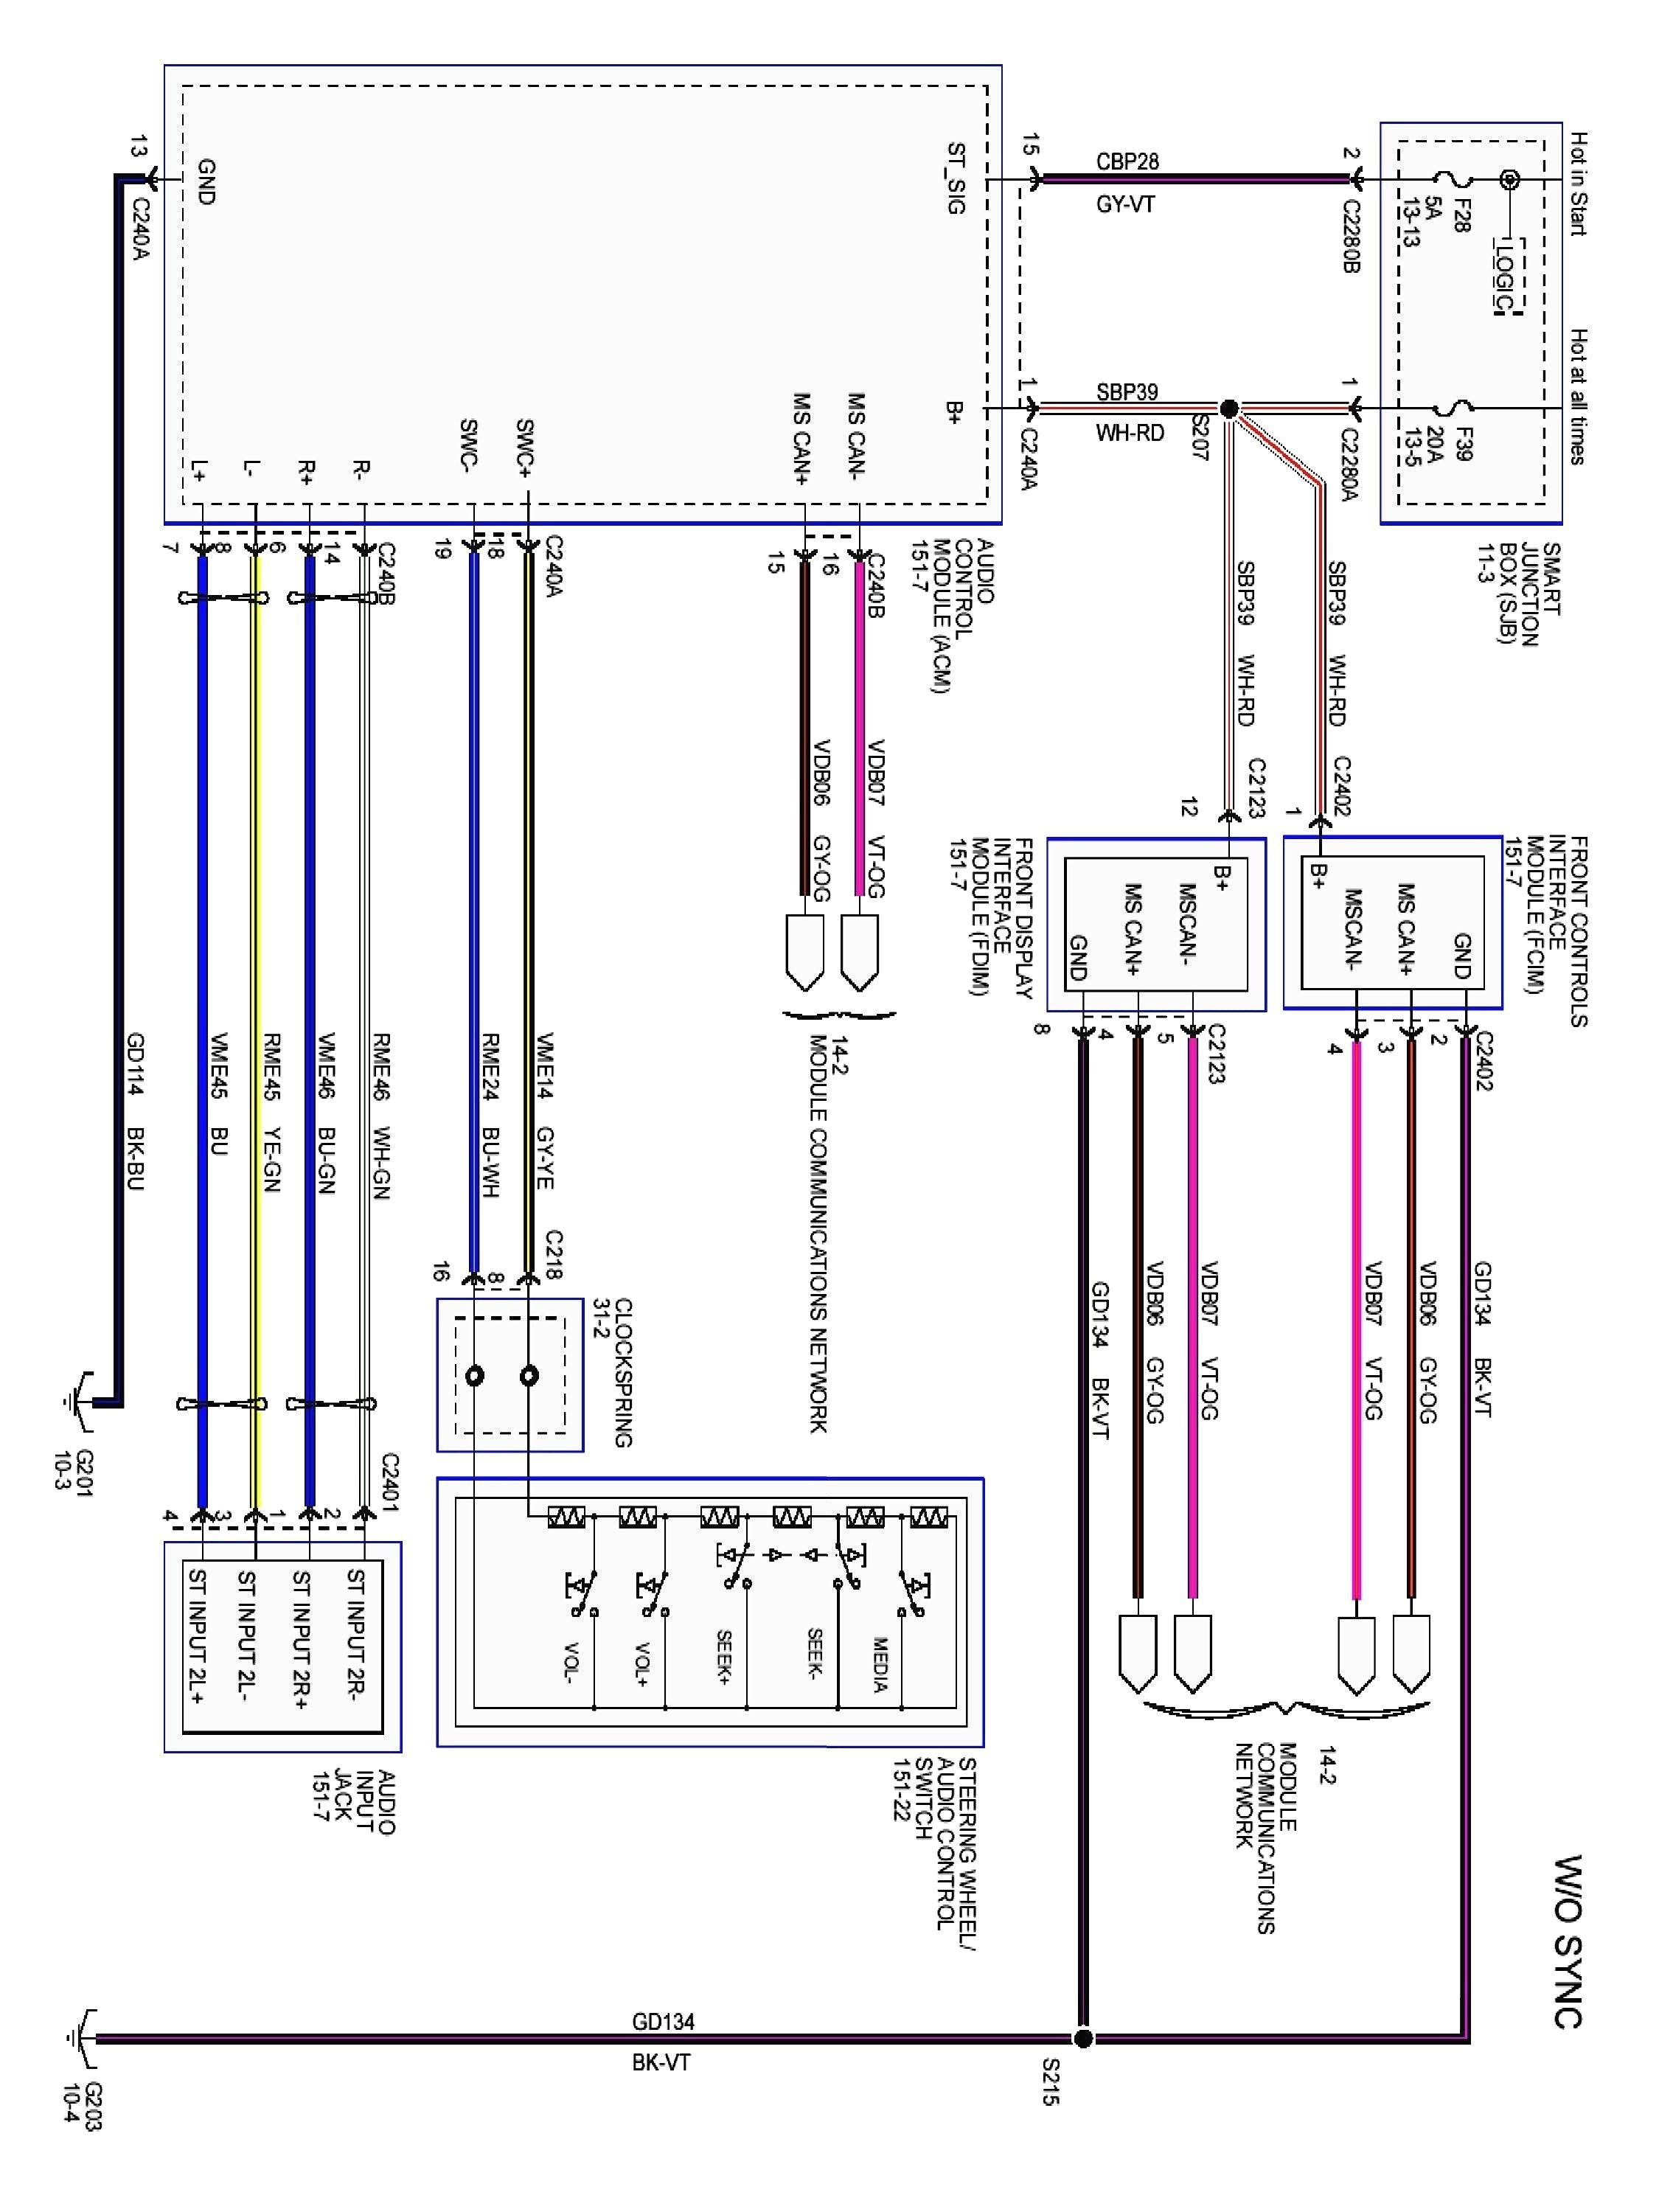 02 focus wiring schematic wiring diagram schematic 2000 ford focus airbag wiring diagram schema diagram database